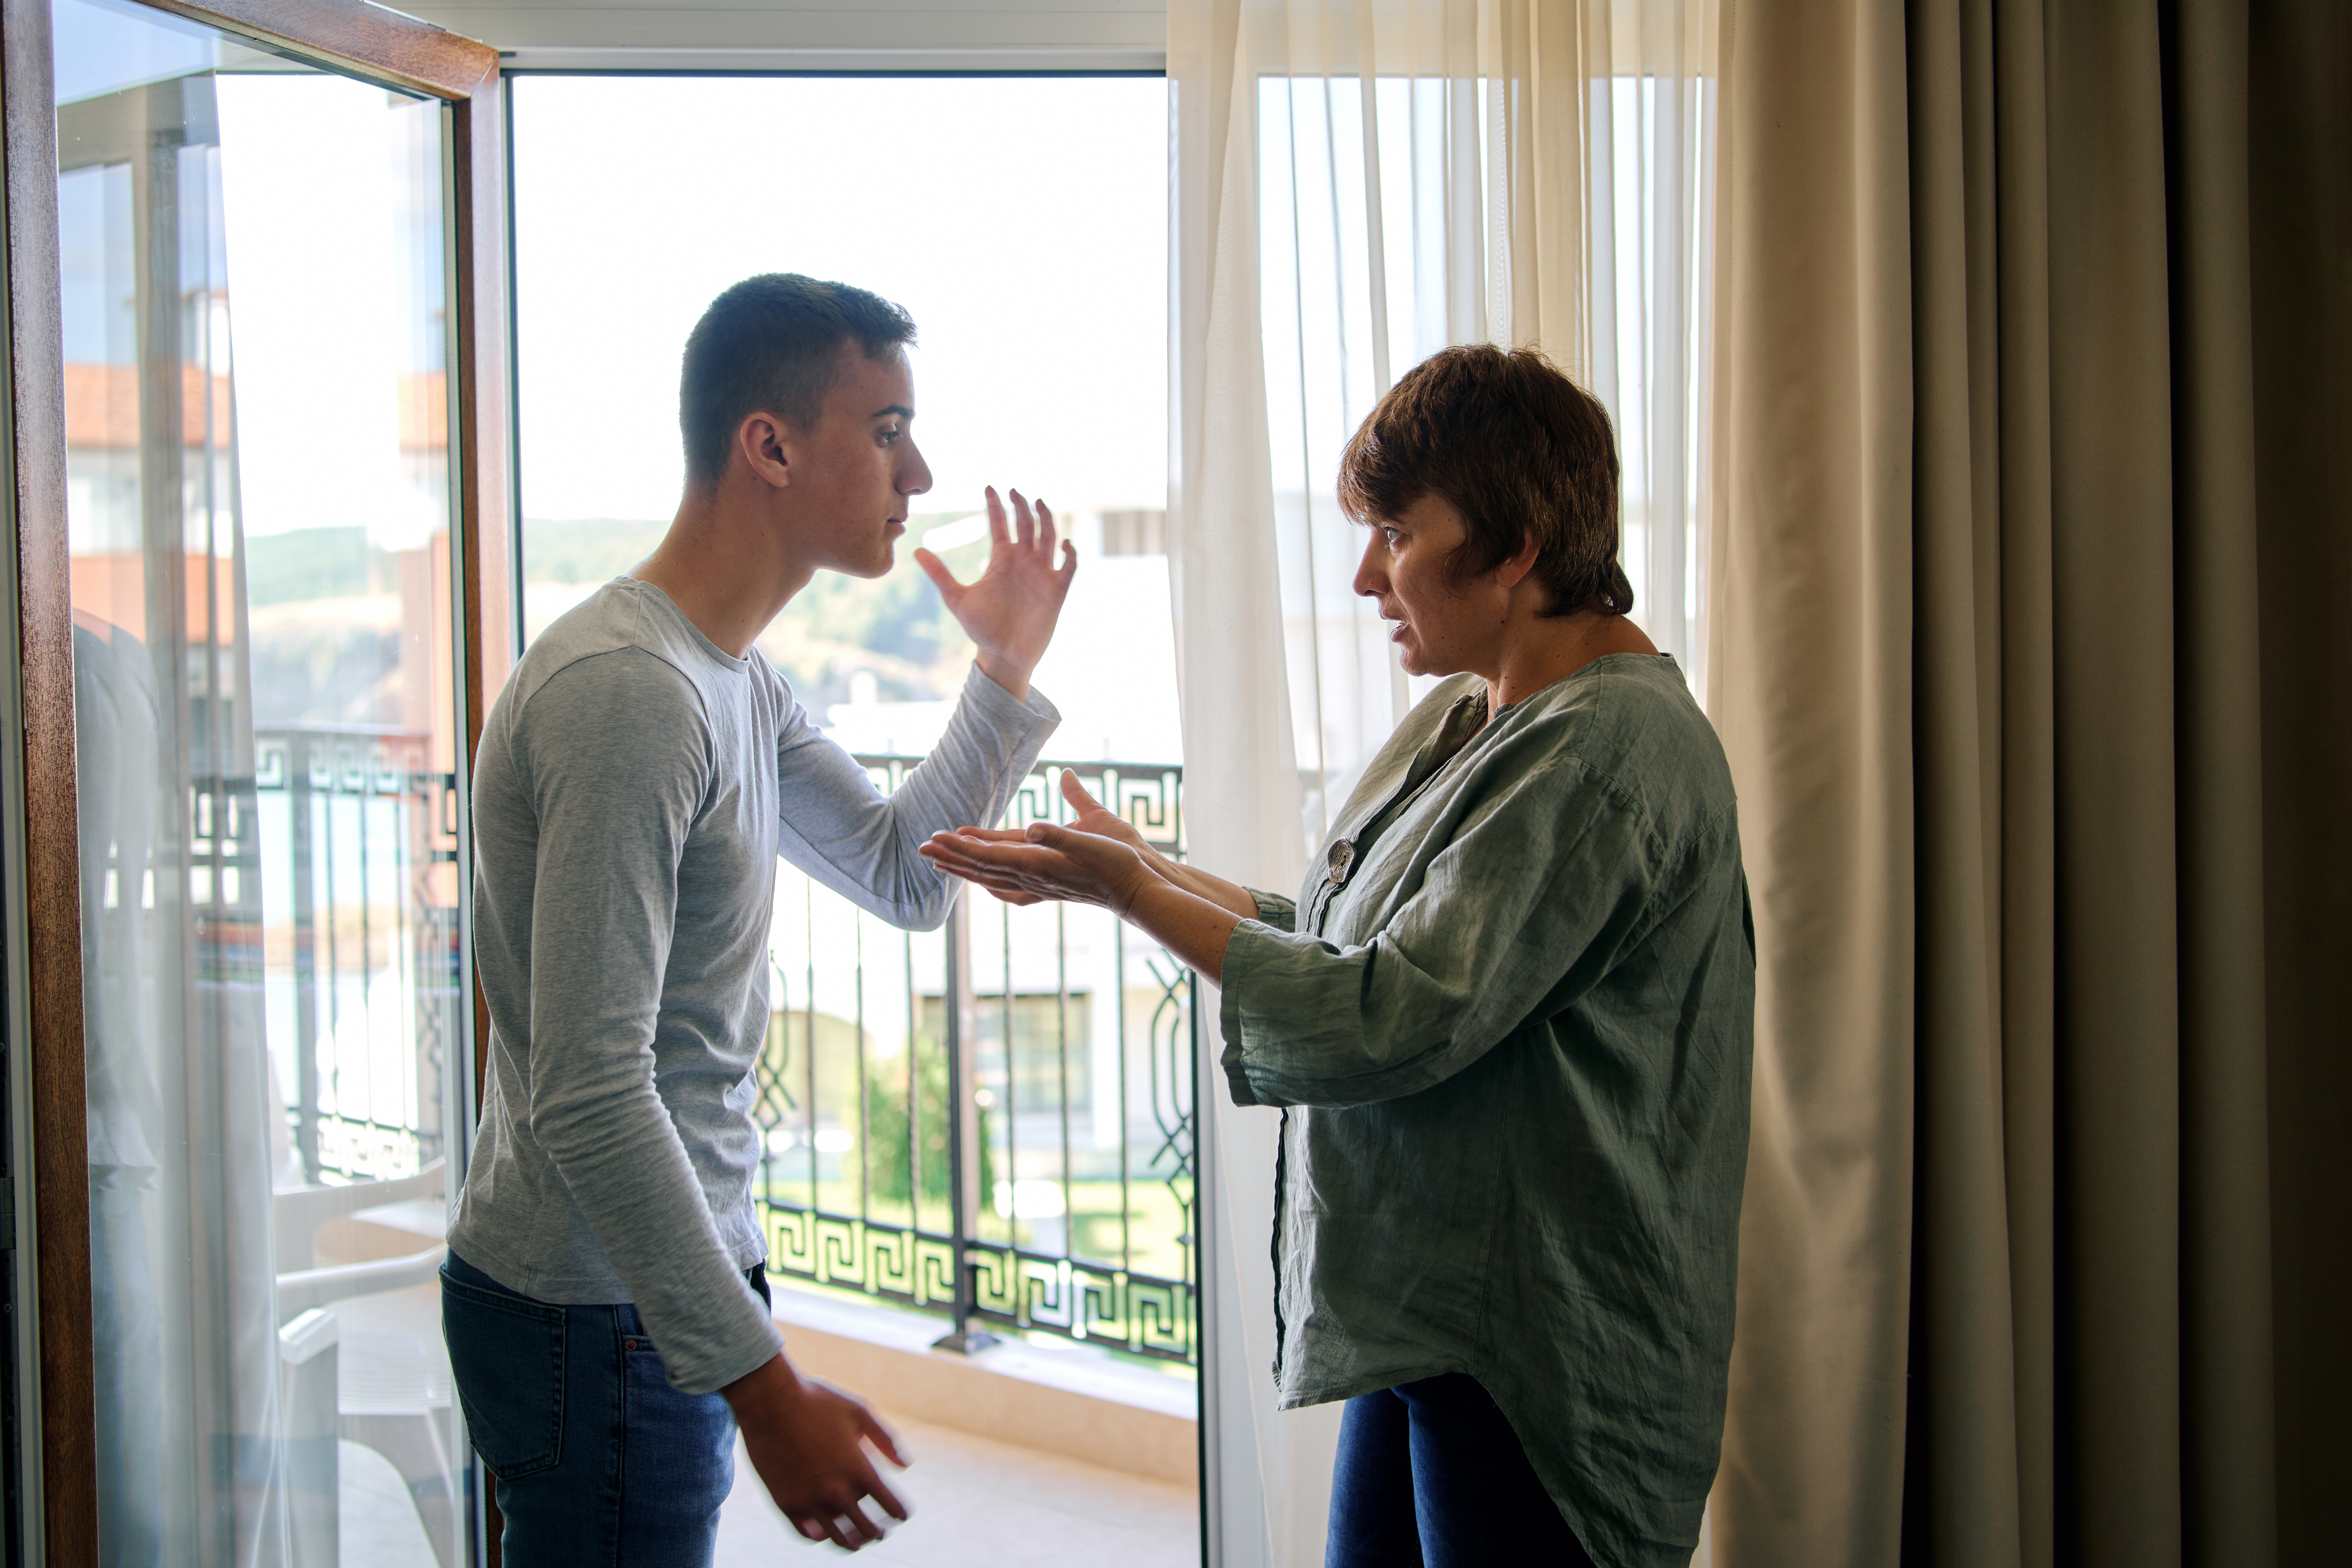 Mutter streitet sich mit Sohn zu Hause | Quelle: Getty Images